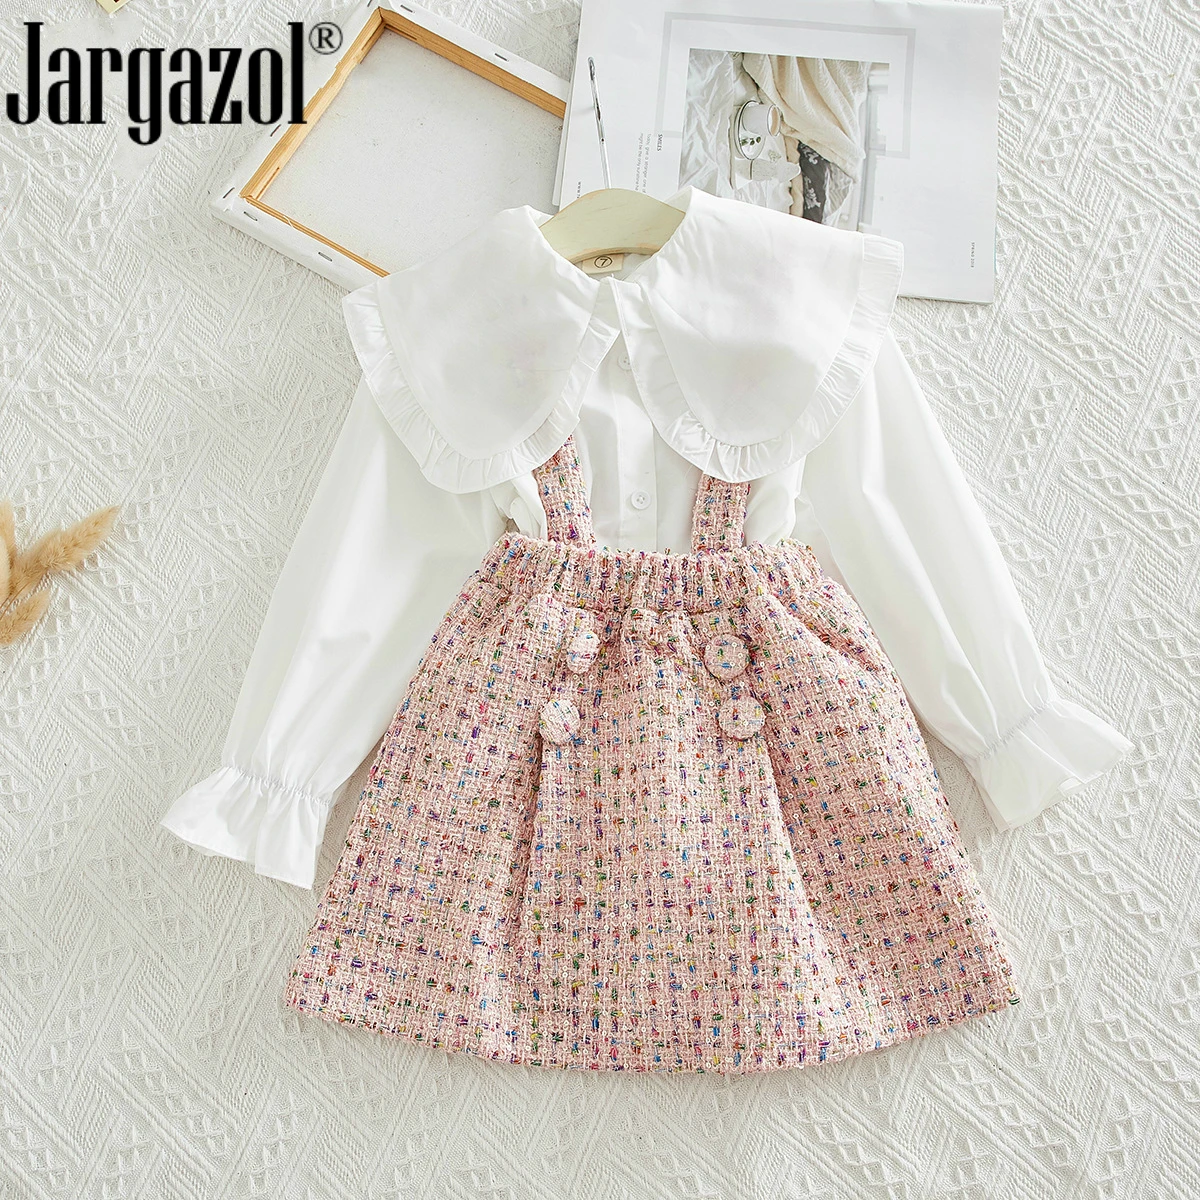 Модный комплект одежды для девочек, белая блузка, рубашка и розовый комбинезон, юбка осенняя одежда для маленьких девочек милый комплект одежды для детей